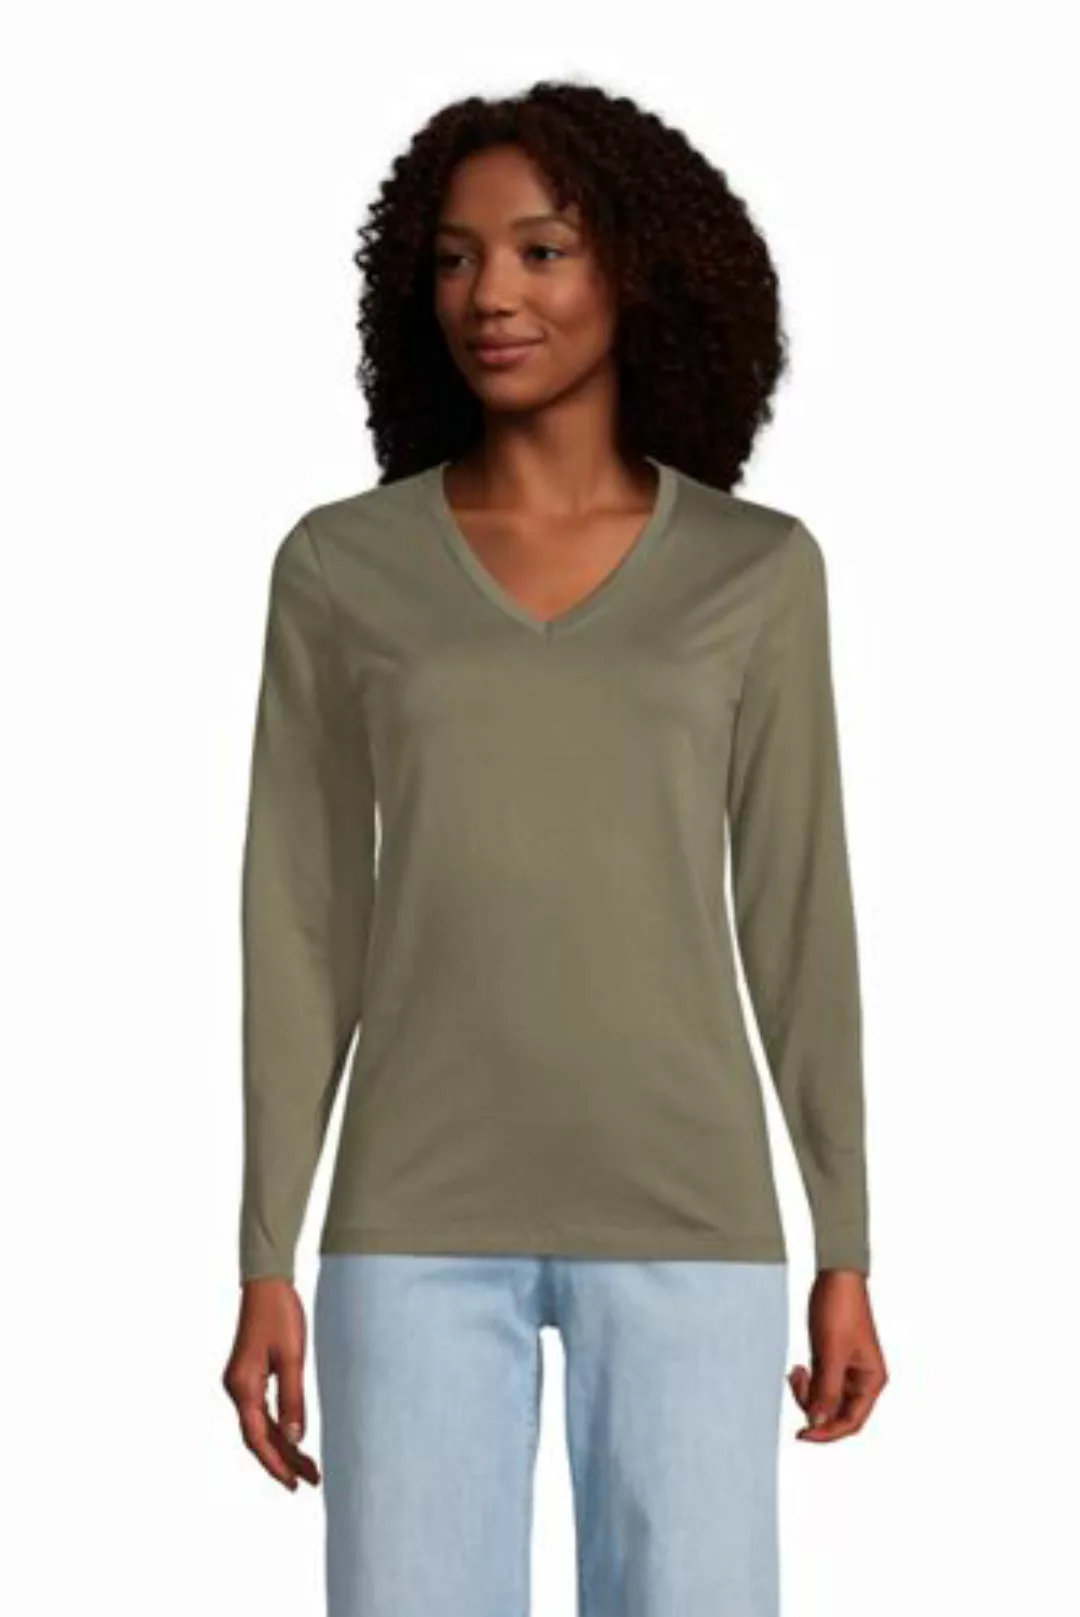 Supima Langarm-Shirt mit V-Ausschnitt in Petite-Größe, Damen, Größe: S Peti günstig online kaufen